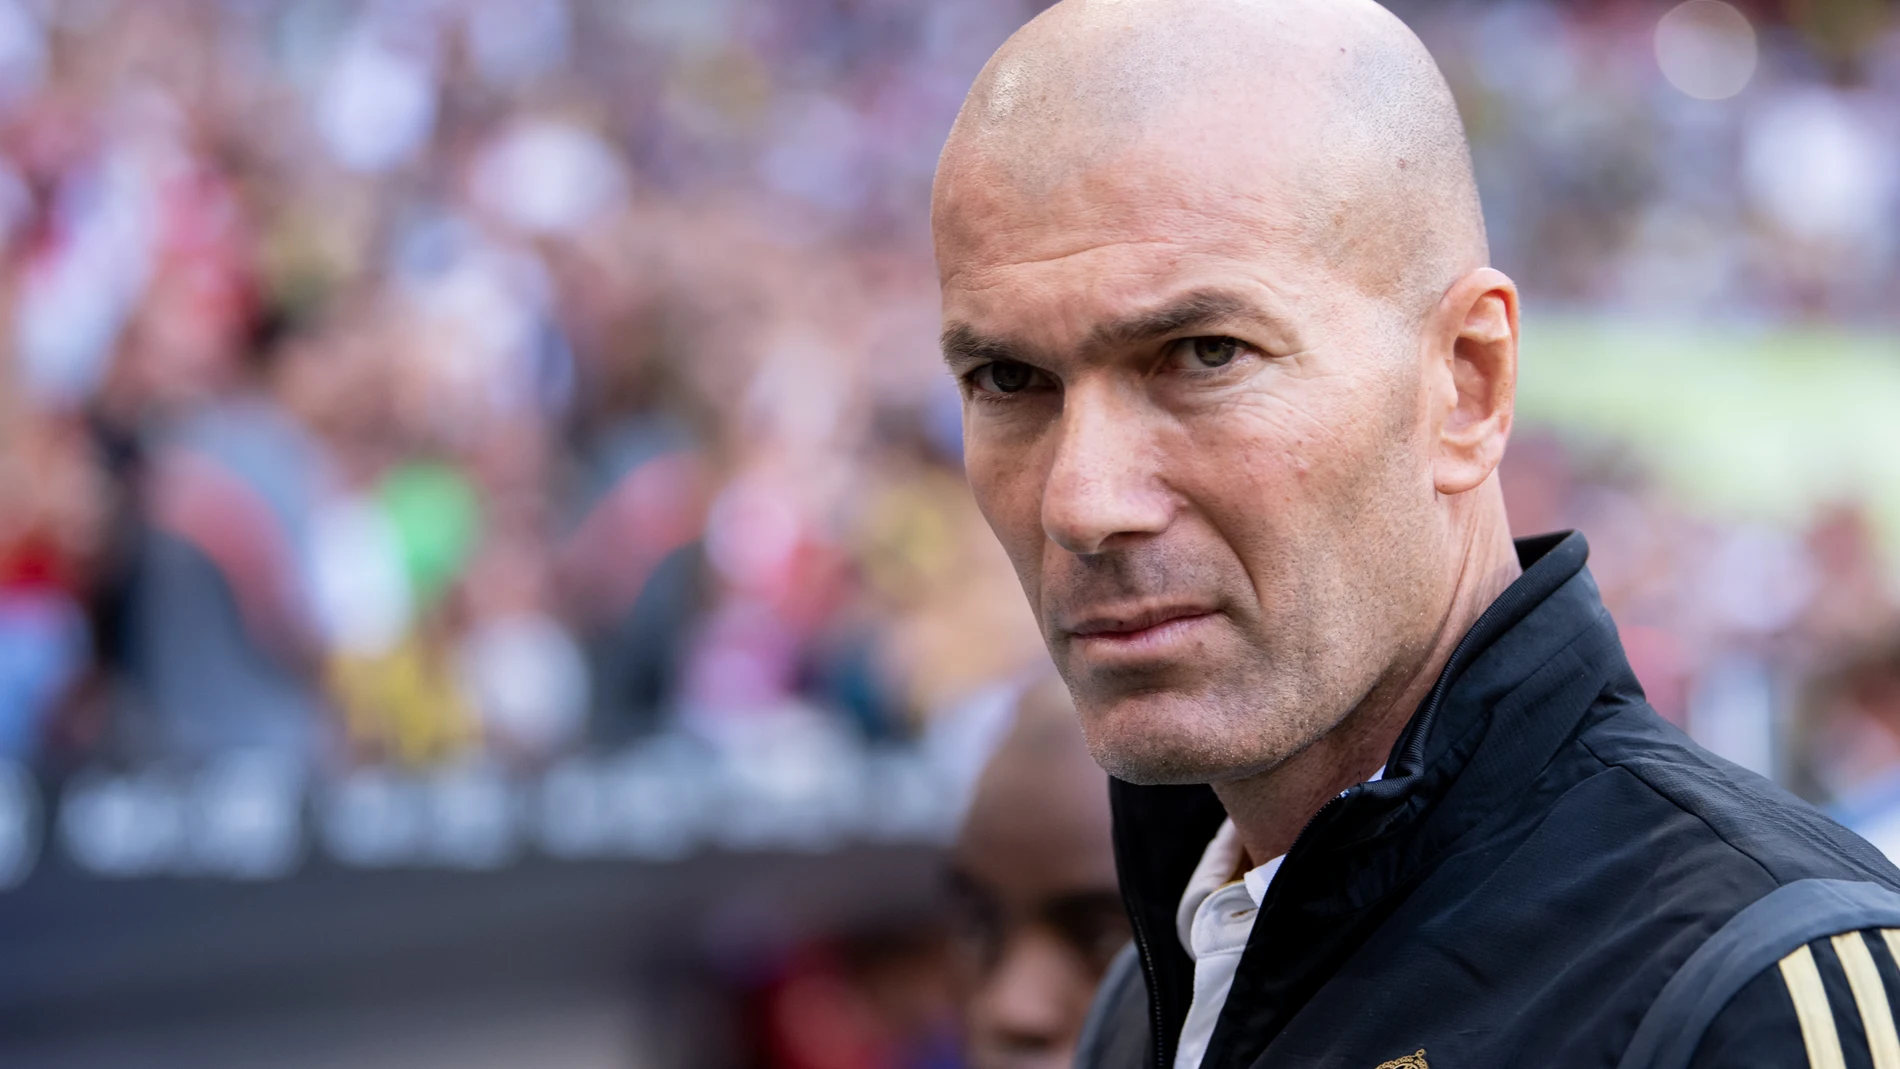 Fútbol.- Zidane: "Es una situación totalmente rara, nada nos va a quitar la ilusión de volver"